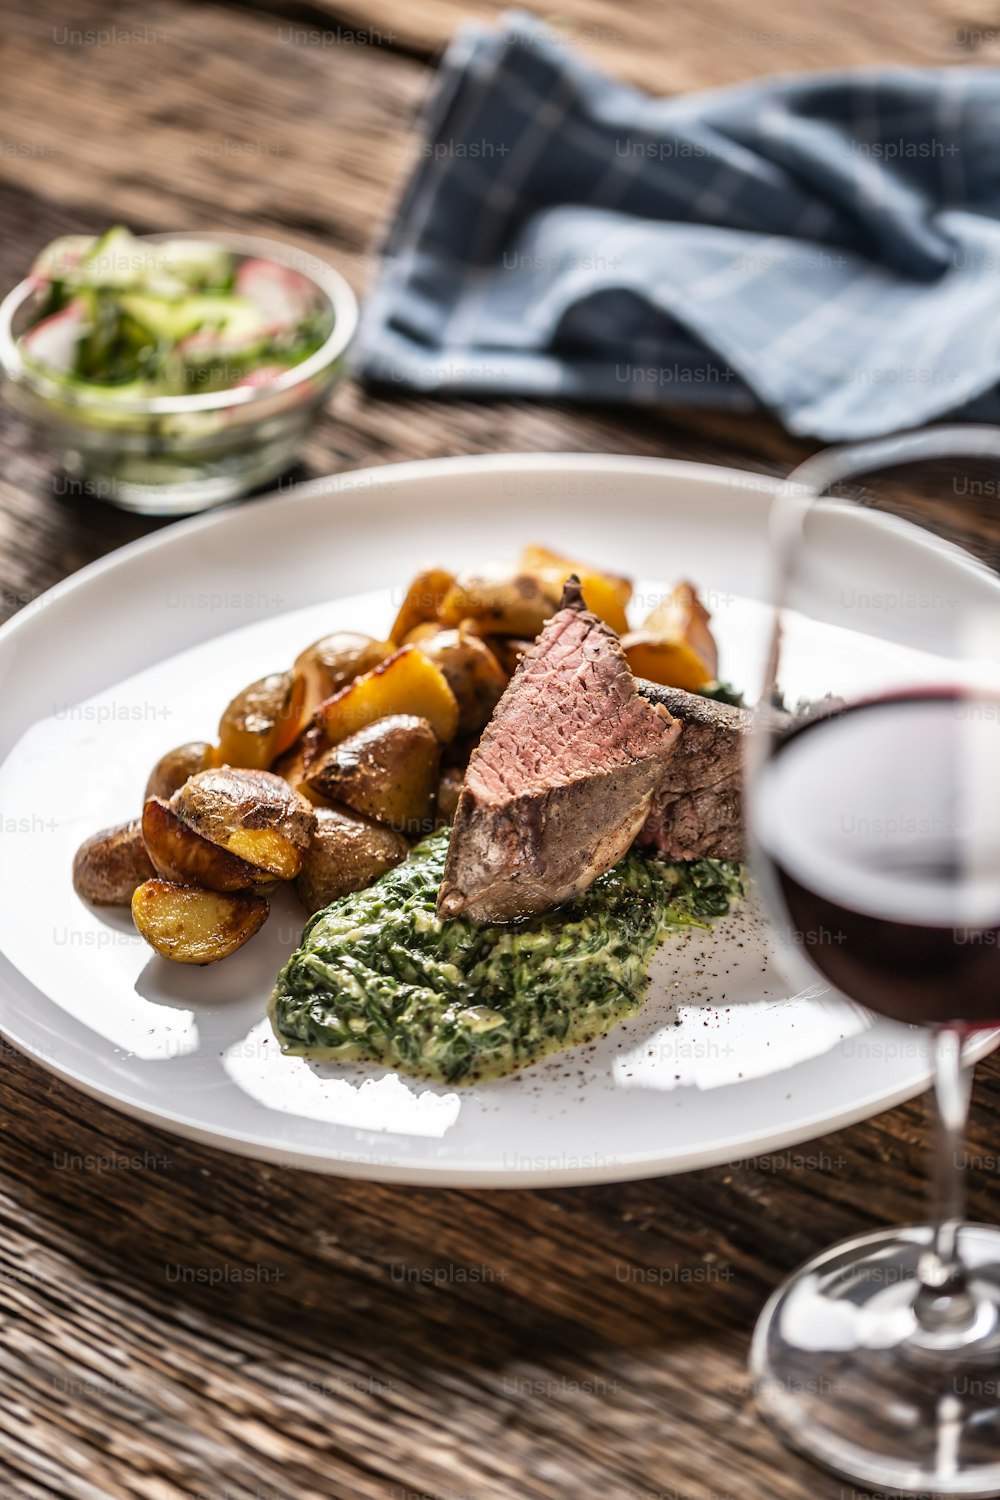 Rotwein als typischer Durchschnitt zu einem roten Sous Vide Steak mit Bratkartoffeln, Spinatdip und frischem Salat, serviert auf einem weißen Porzellanteller auf dem Holzschreibtisch.